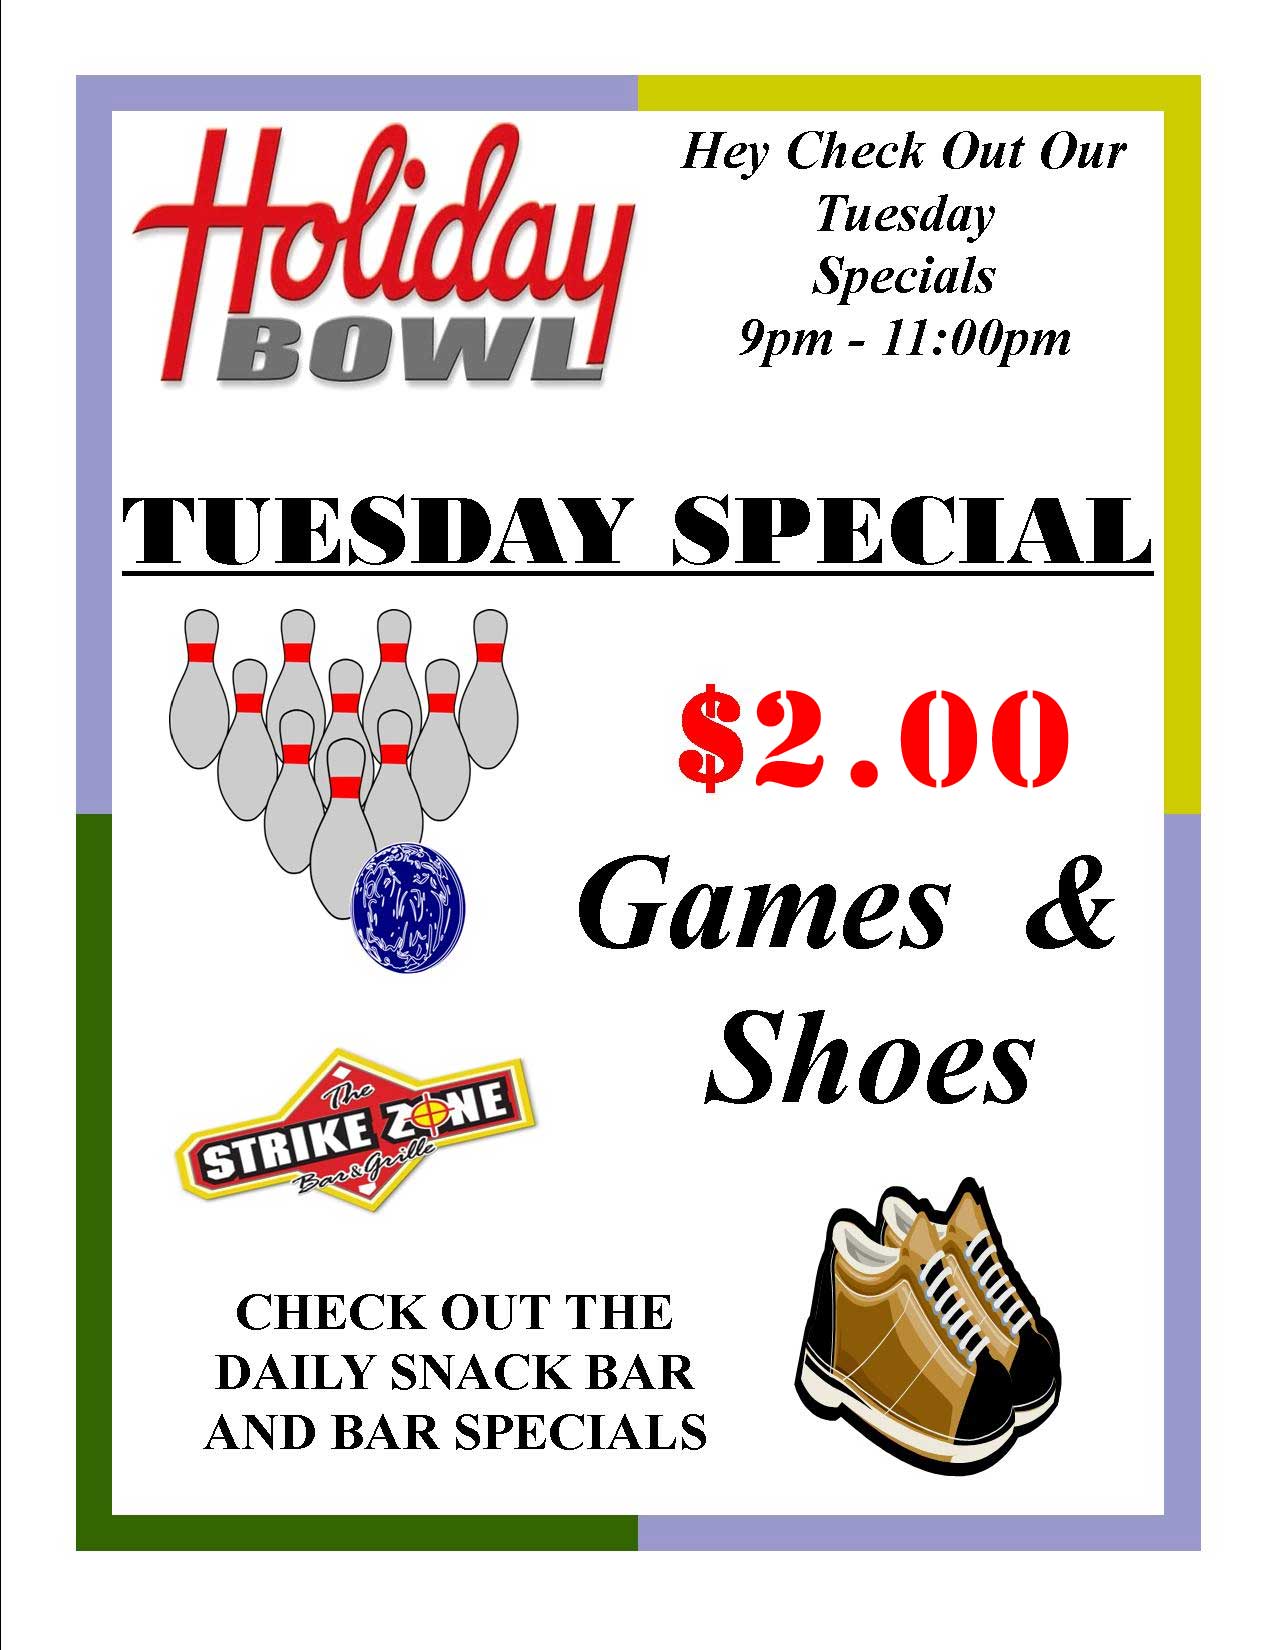 Holiday Bowl Altoona - Tuesday Special